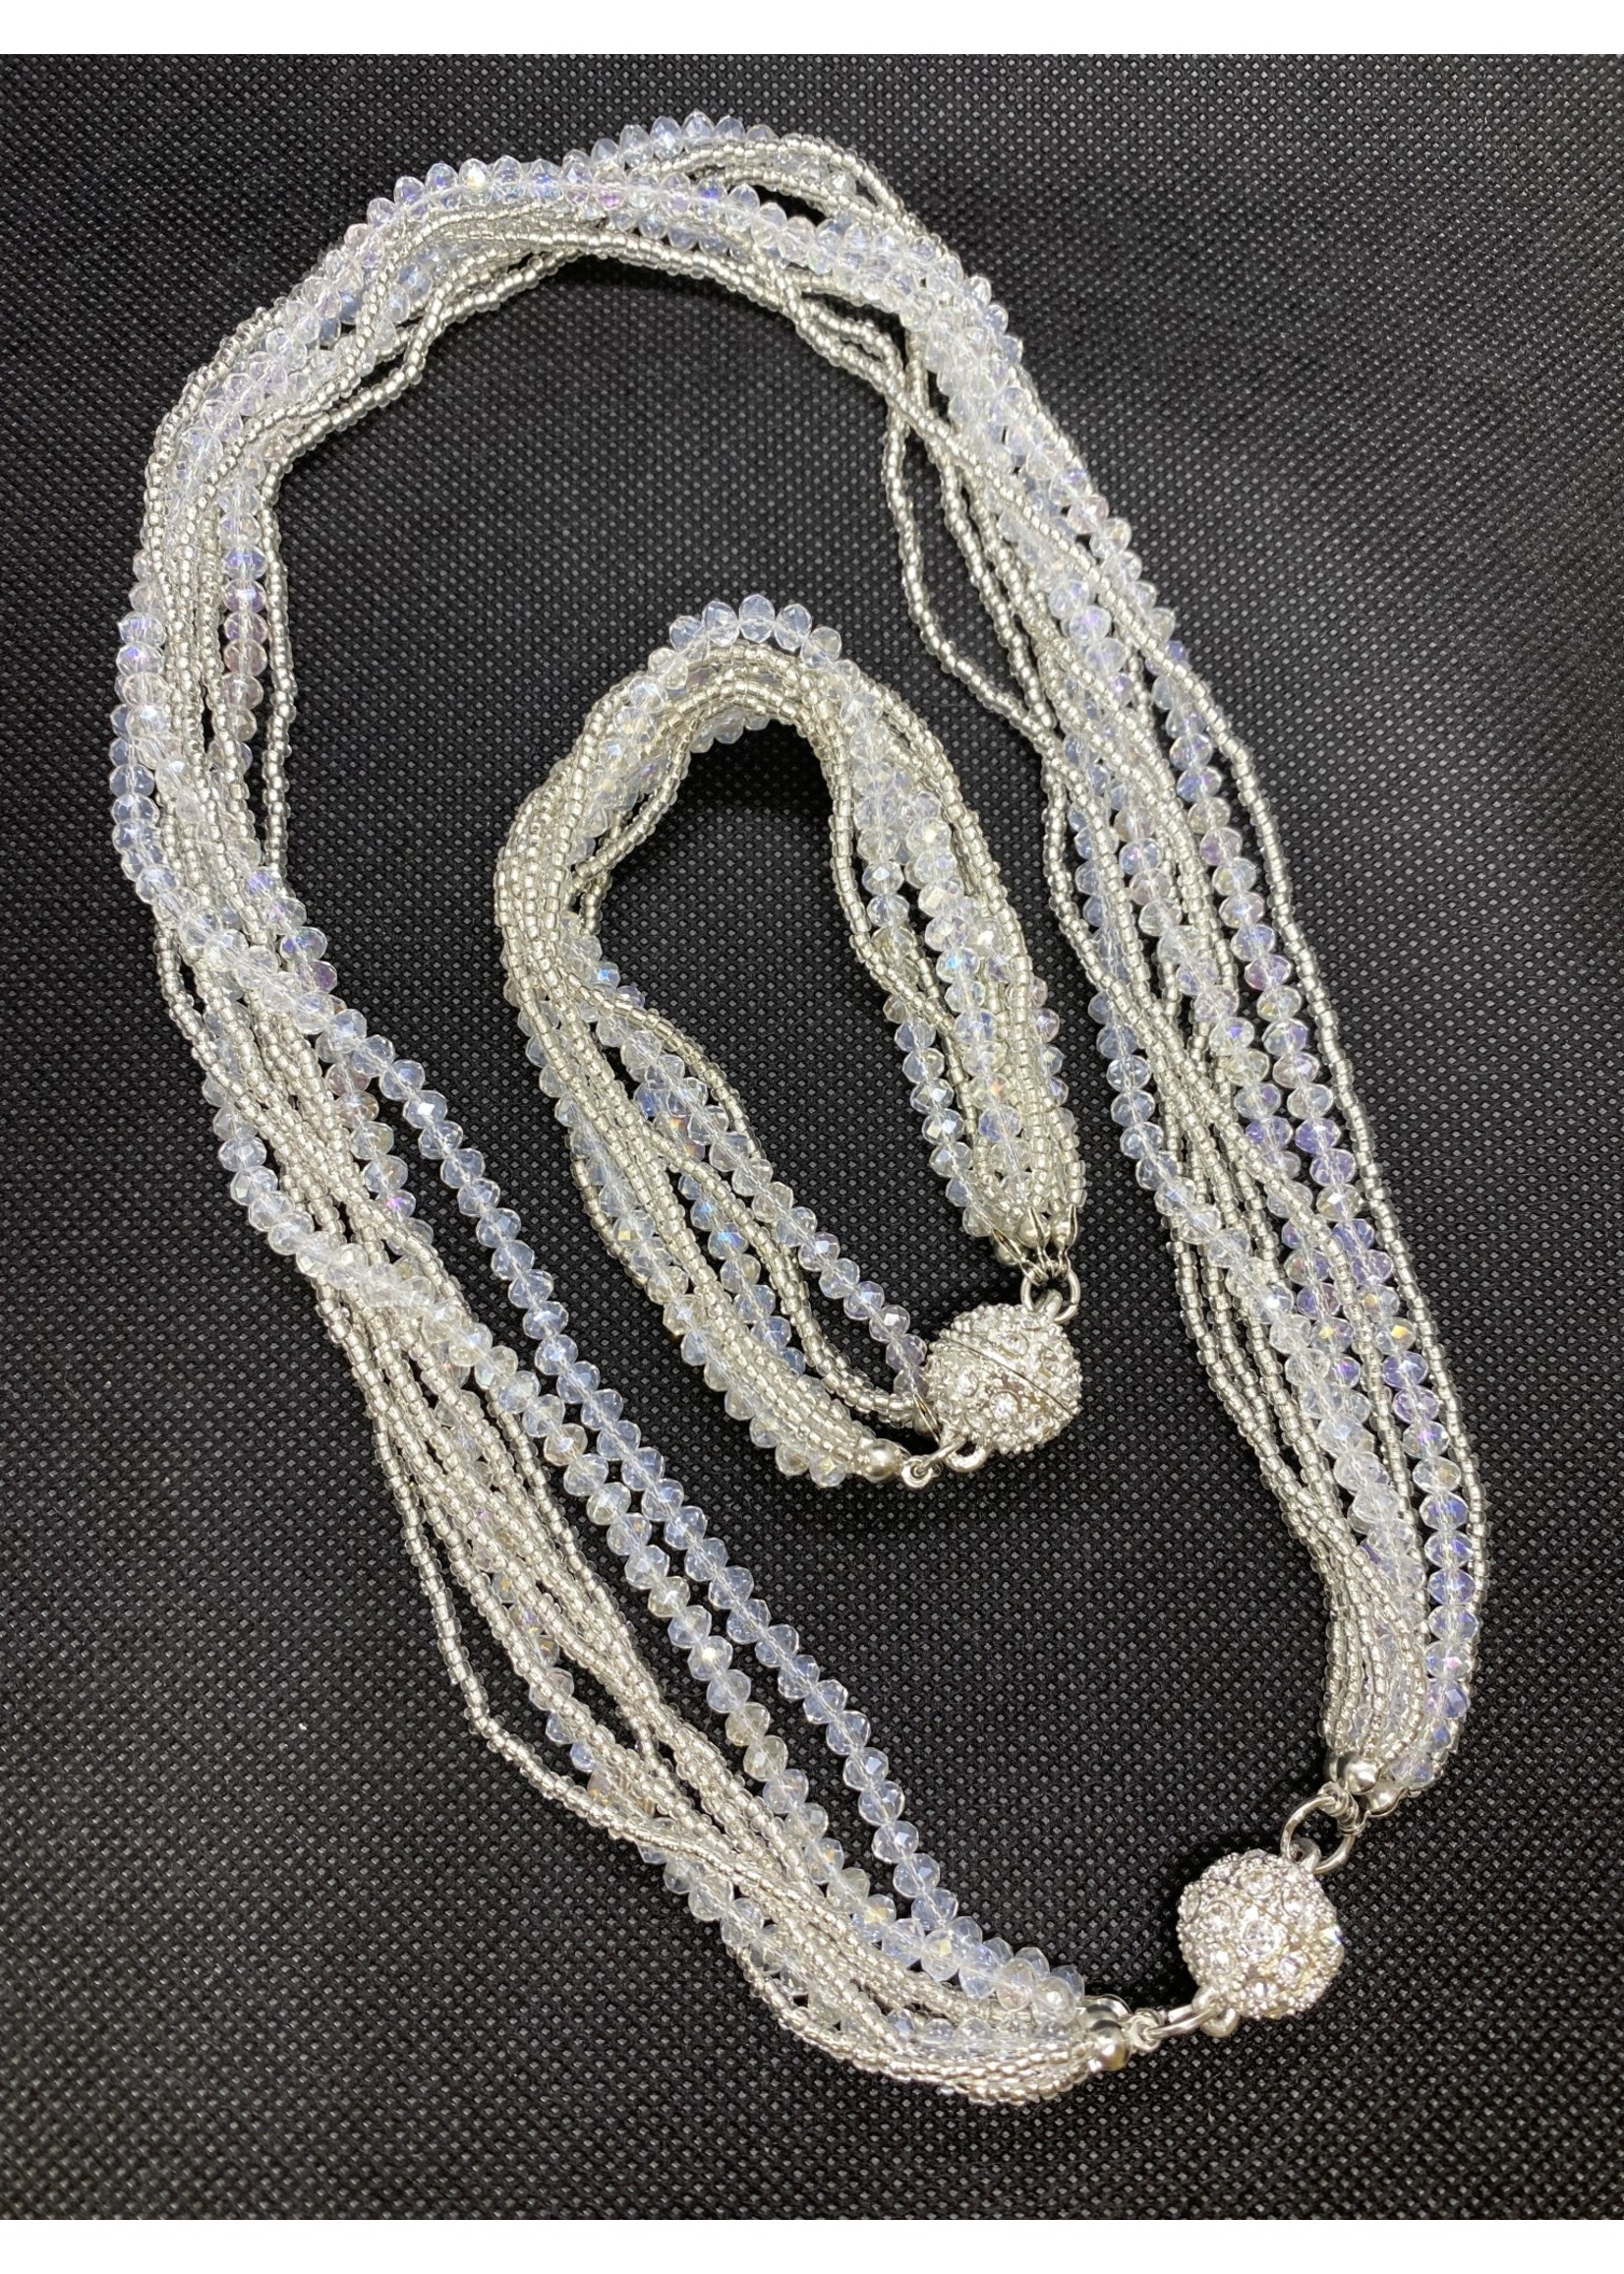 Crystal and diamanté necklace and bracelet set